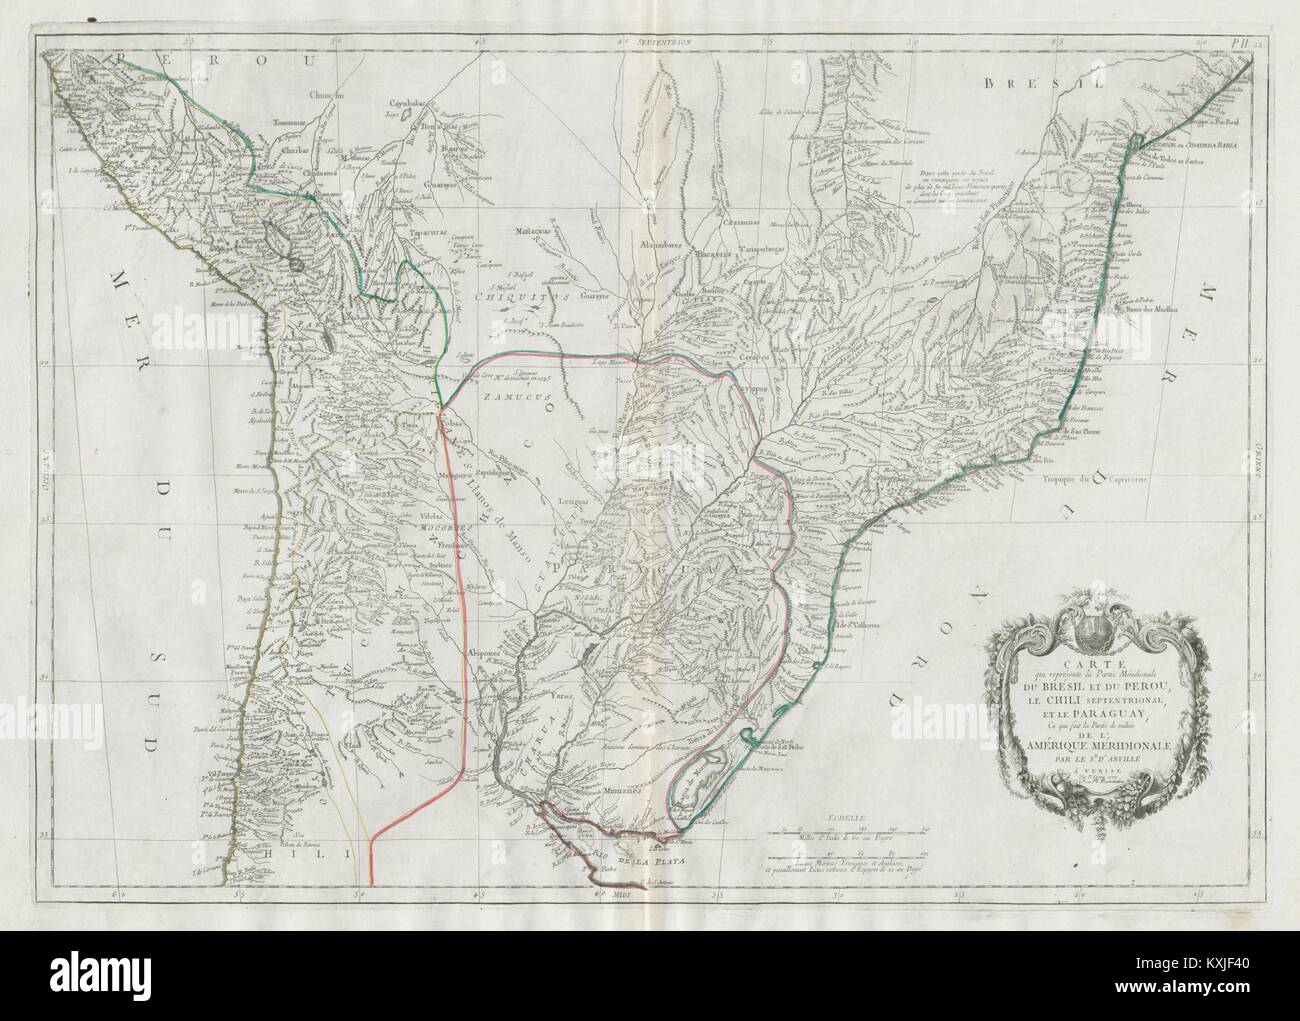 'La Partie méridionale du Brésil et du Perou'. SANTINI/D'Anville 1784 alte Karte Stockfoto